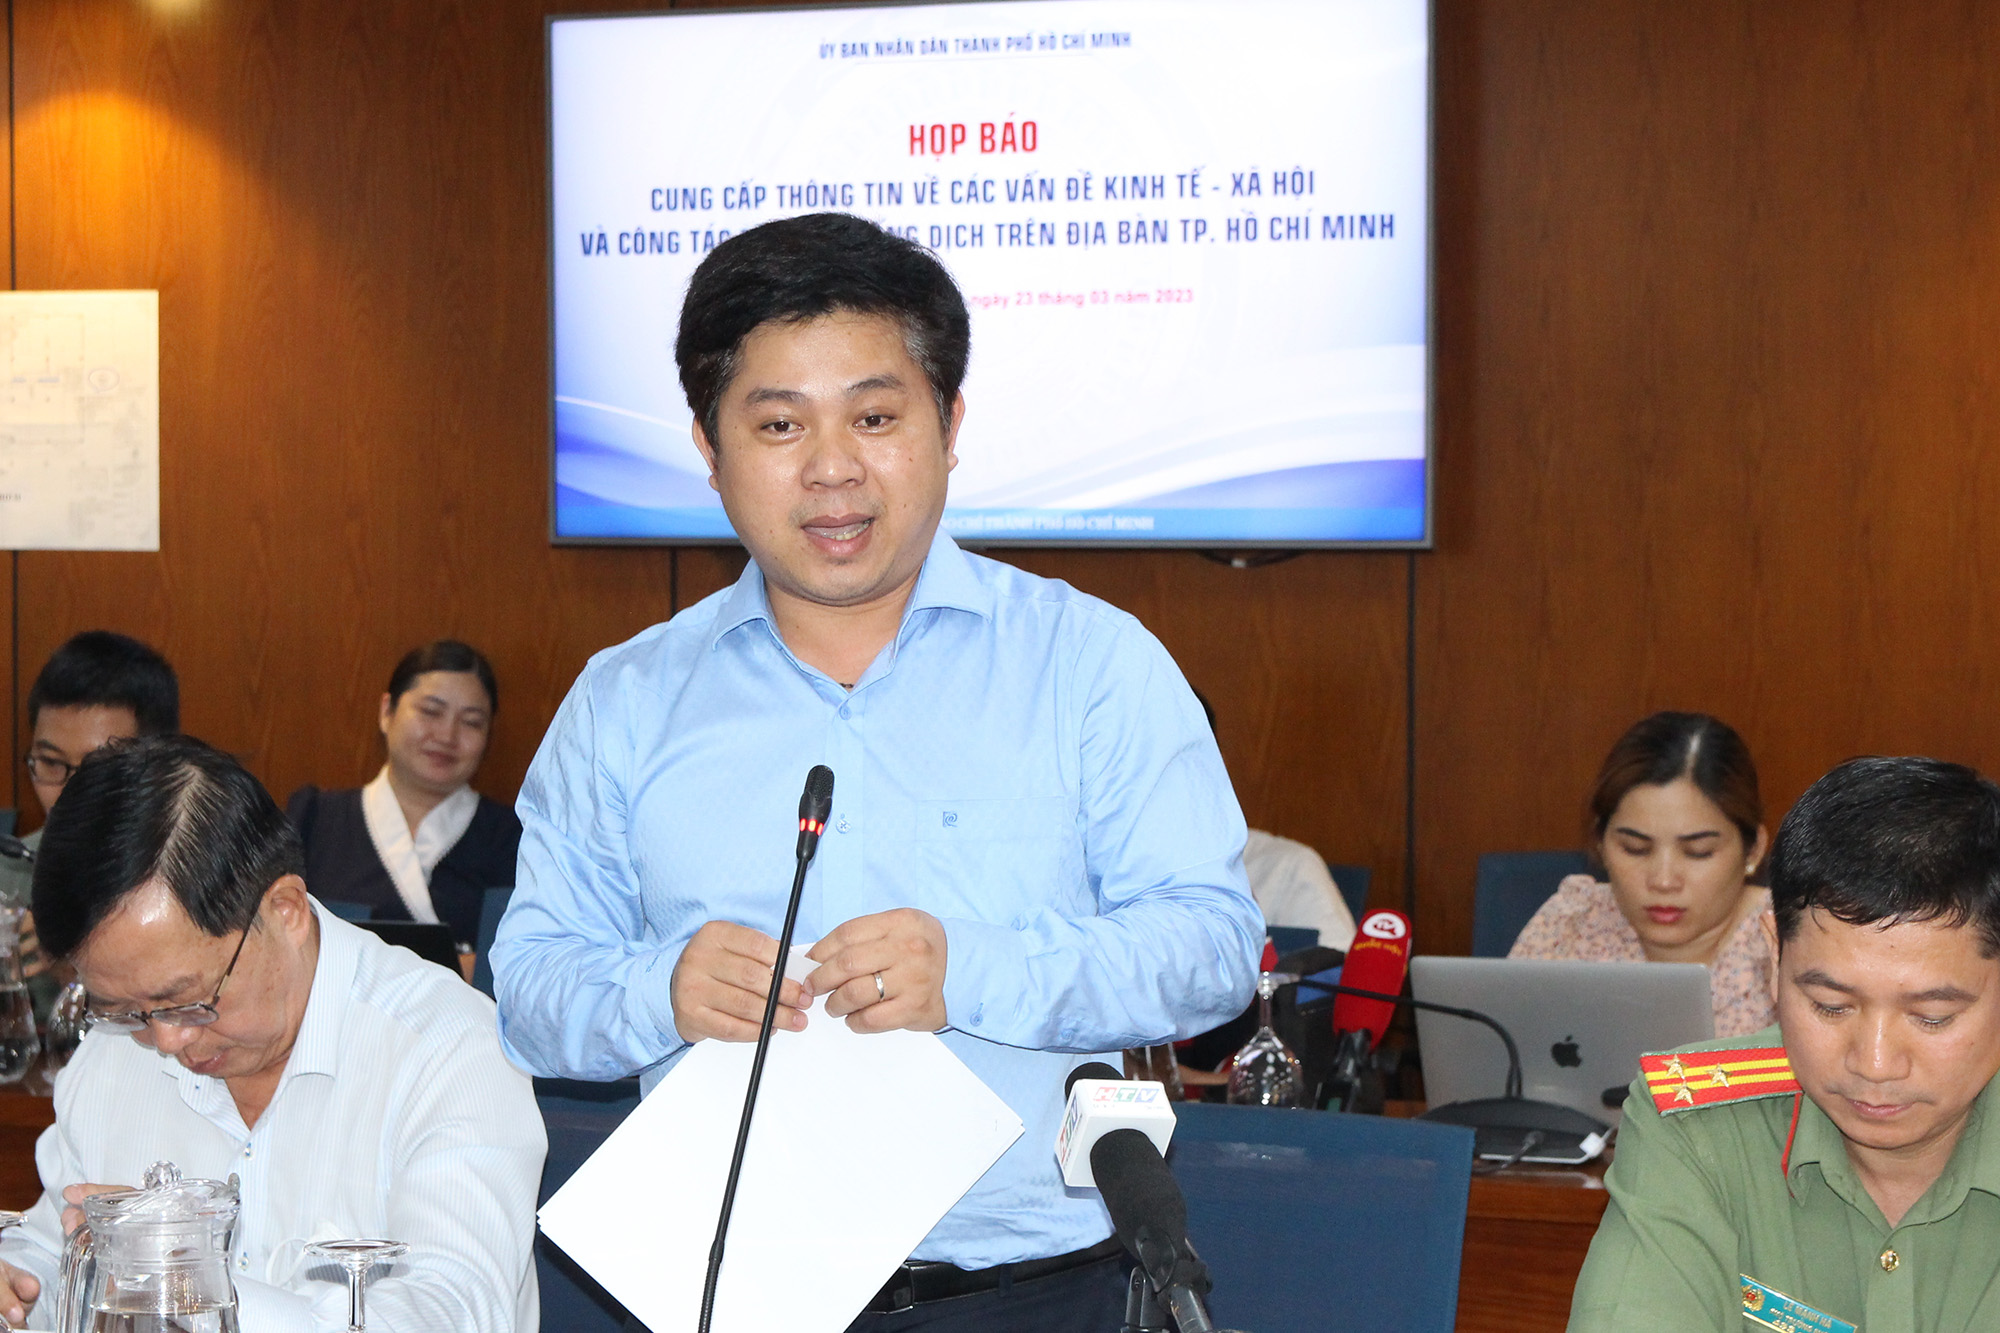 Chánh Văn phòng Sở GD&ĐT Thành phố Hồ Tấn Minh phát biểu tại buổi họp báo (Ảnh: H.Hào).